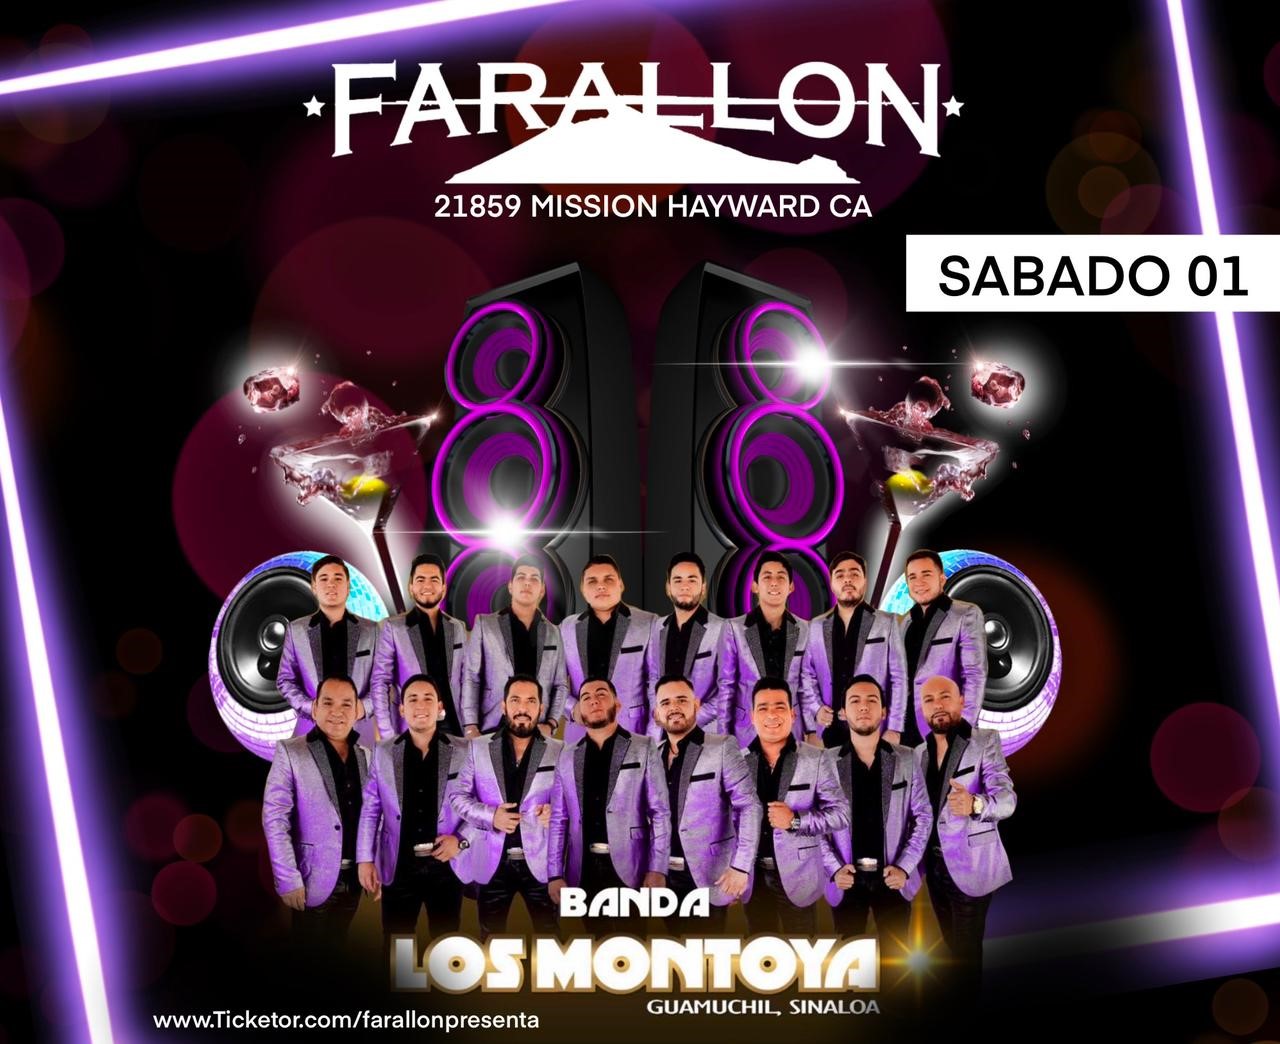 Banda Los Montoya y Nuevo Proyecto  on Oct 01, 20:00@FARALLON - Buy tickets and Get information on farallonpresenta farallonpresenta